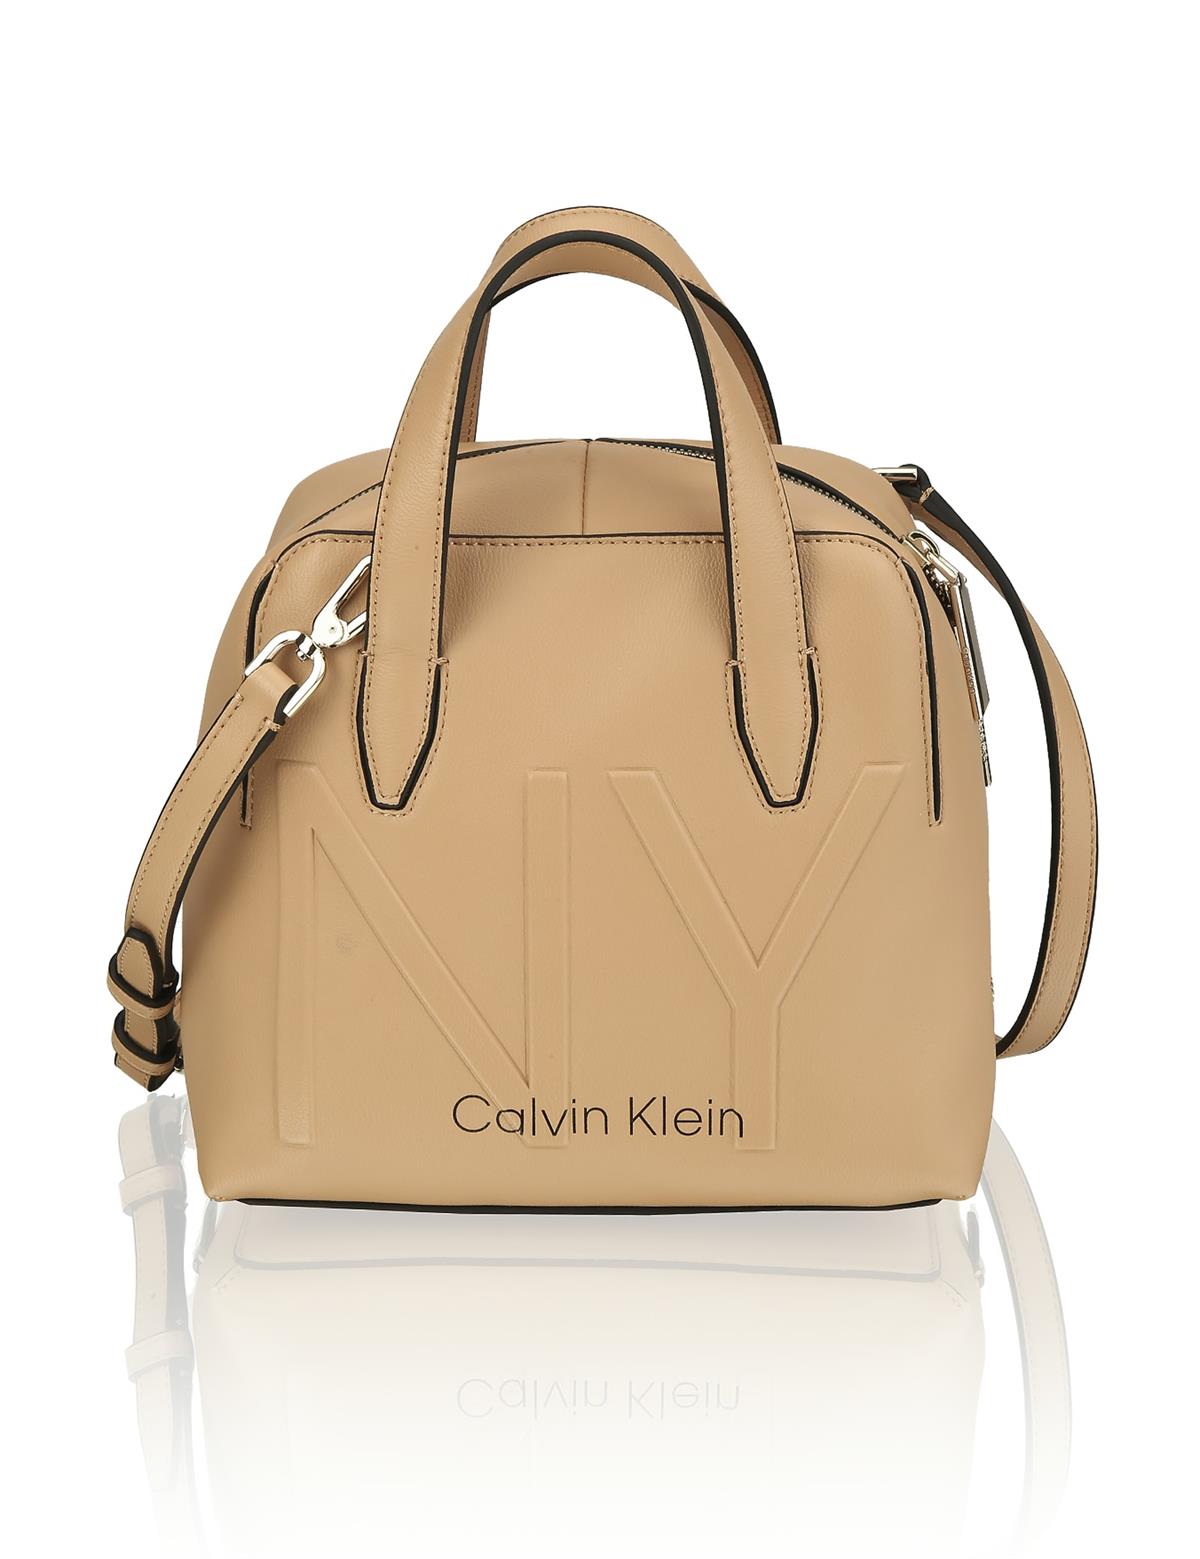 HUMANIC 90 Calvin Klein Shaped Duffle Bag EUR 130 6131001696